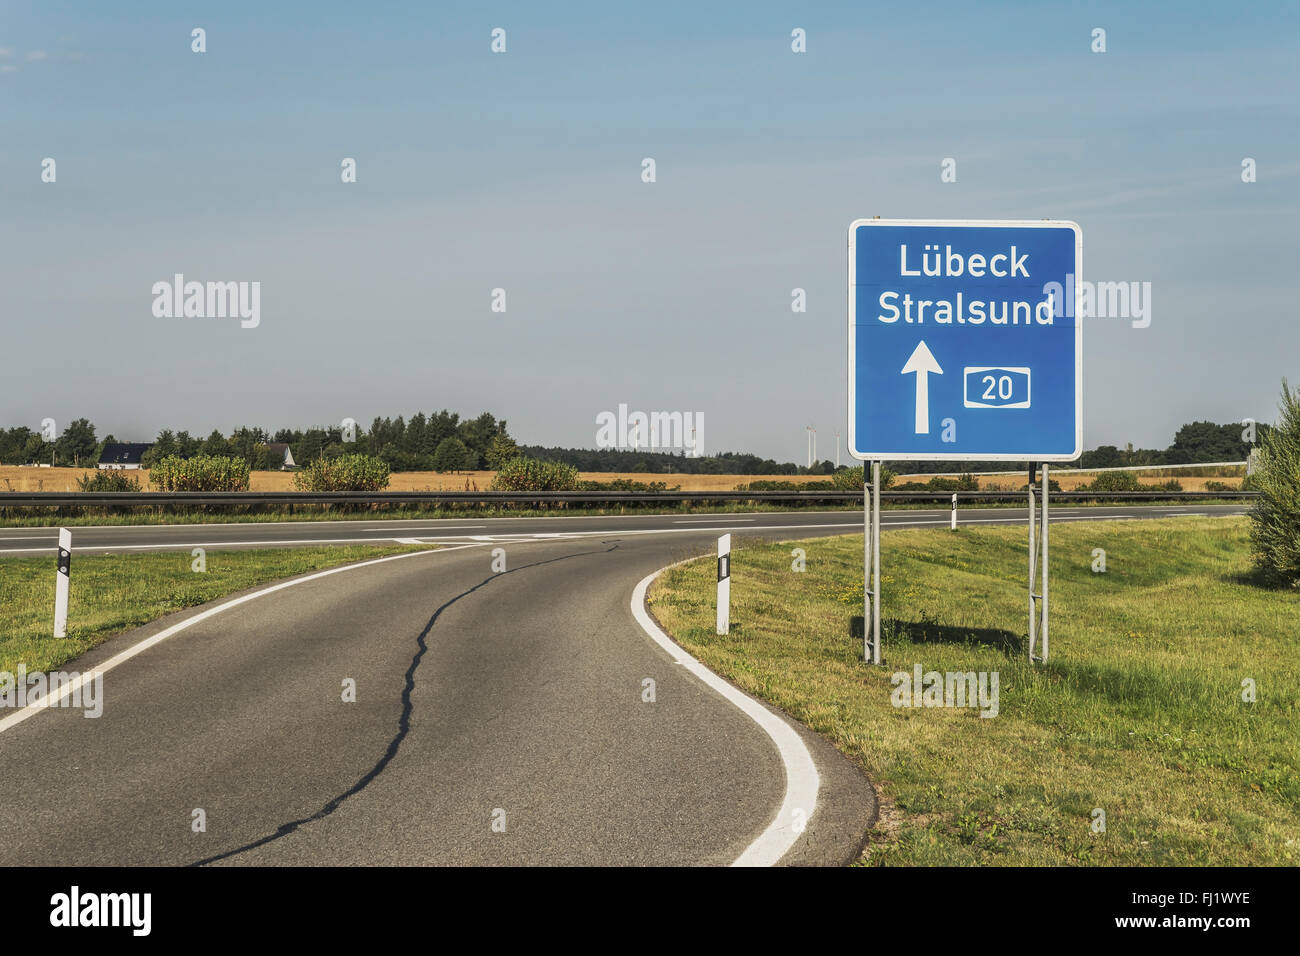 Señal de tráfico en la autopista (Autobahn) alemán A20 dirección Lubeck y Stralsund, Alemania, Europa Foto de stock